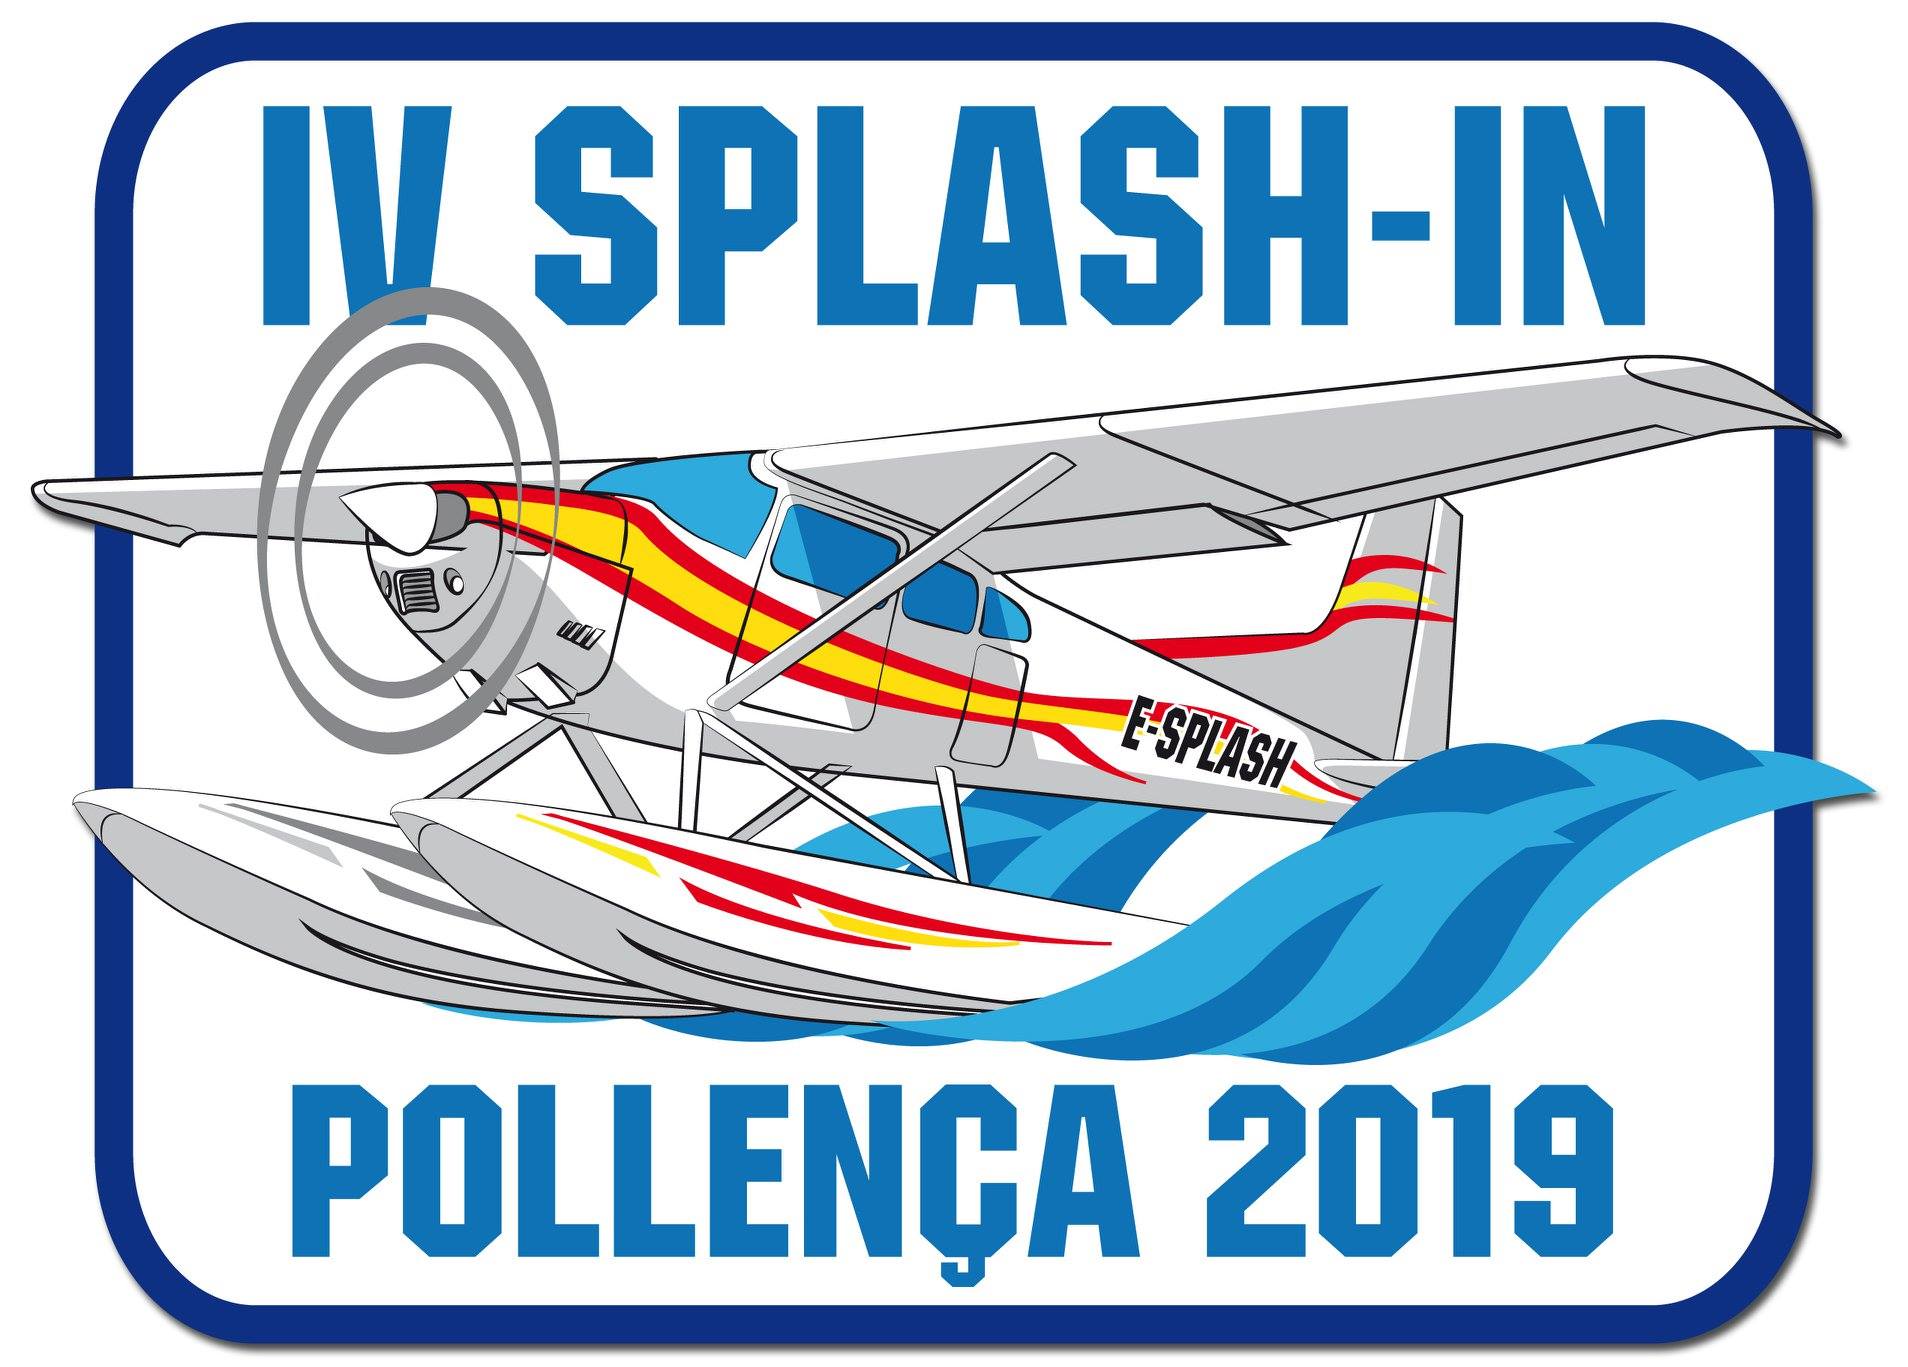 IV Splash-In Pollença 2019